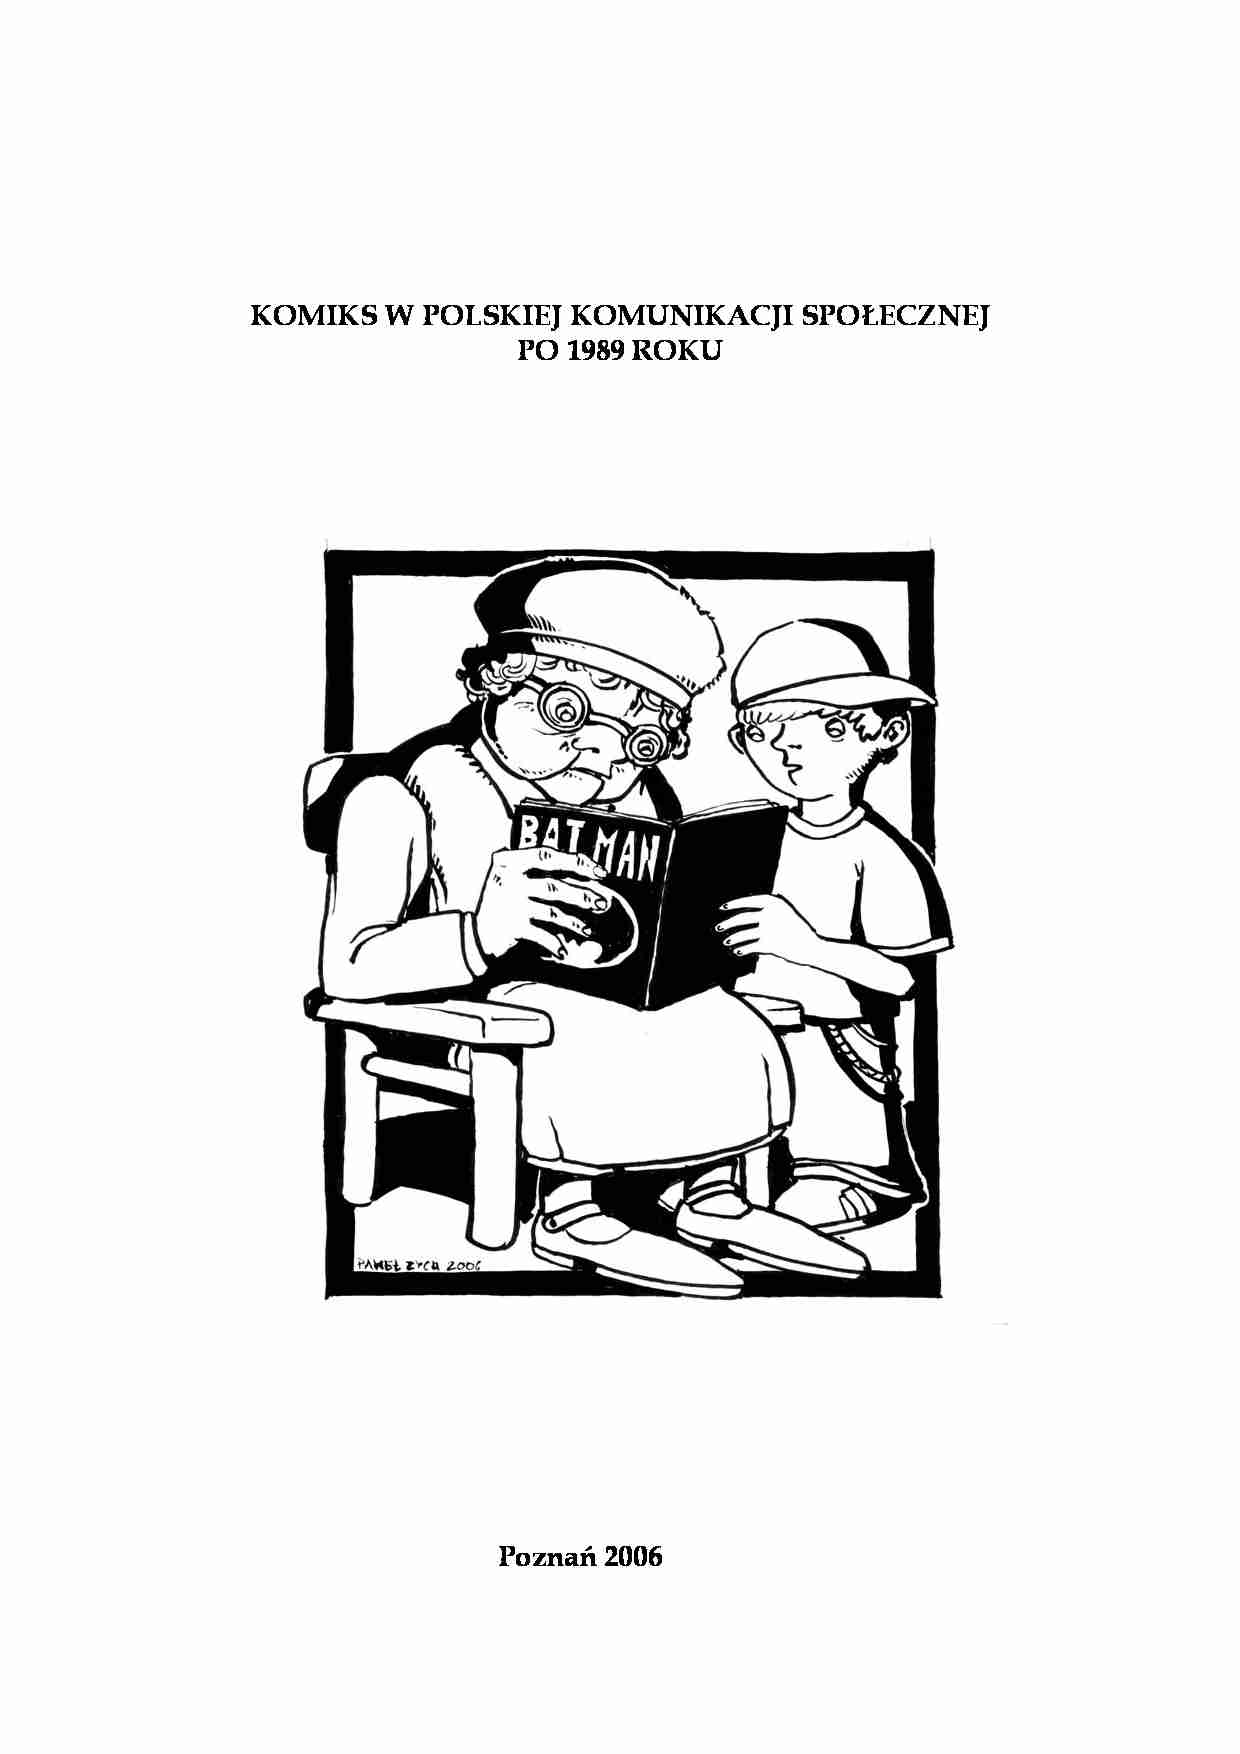 Frąckiewicz Sebastian - Komiks w polskiej komunikacji społecznej po 1989 roku - opracowanie - strona 1